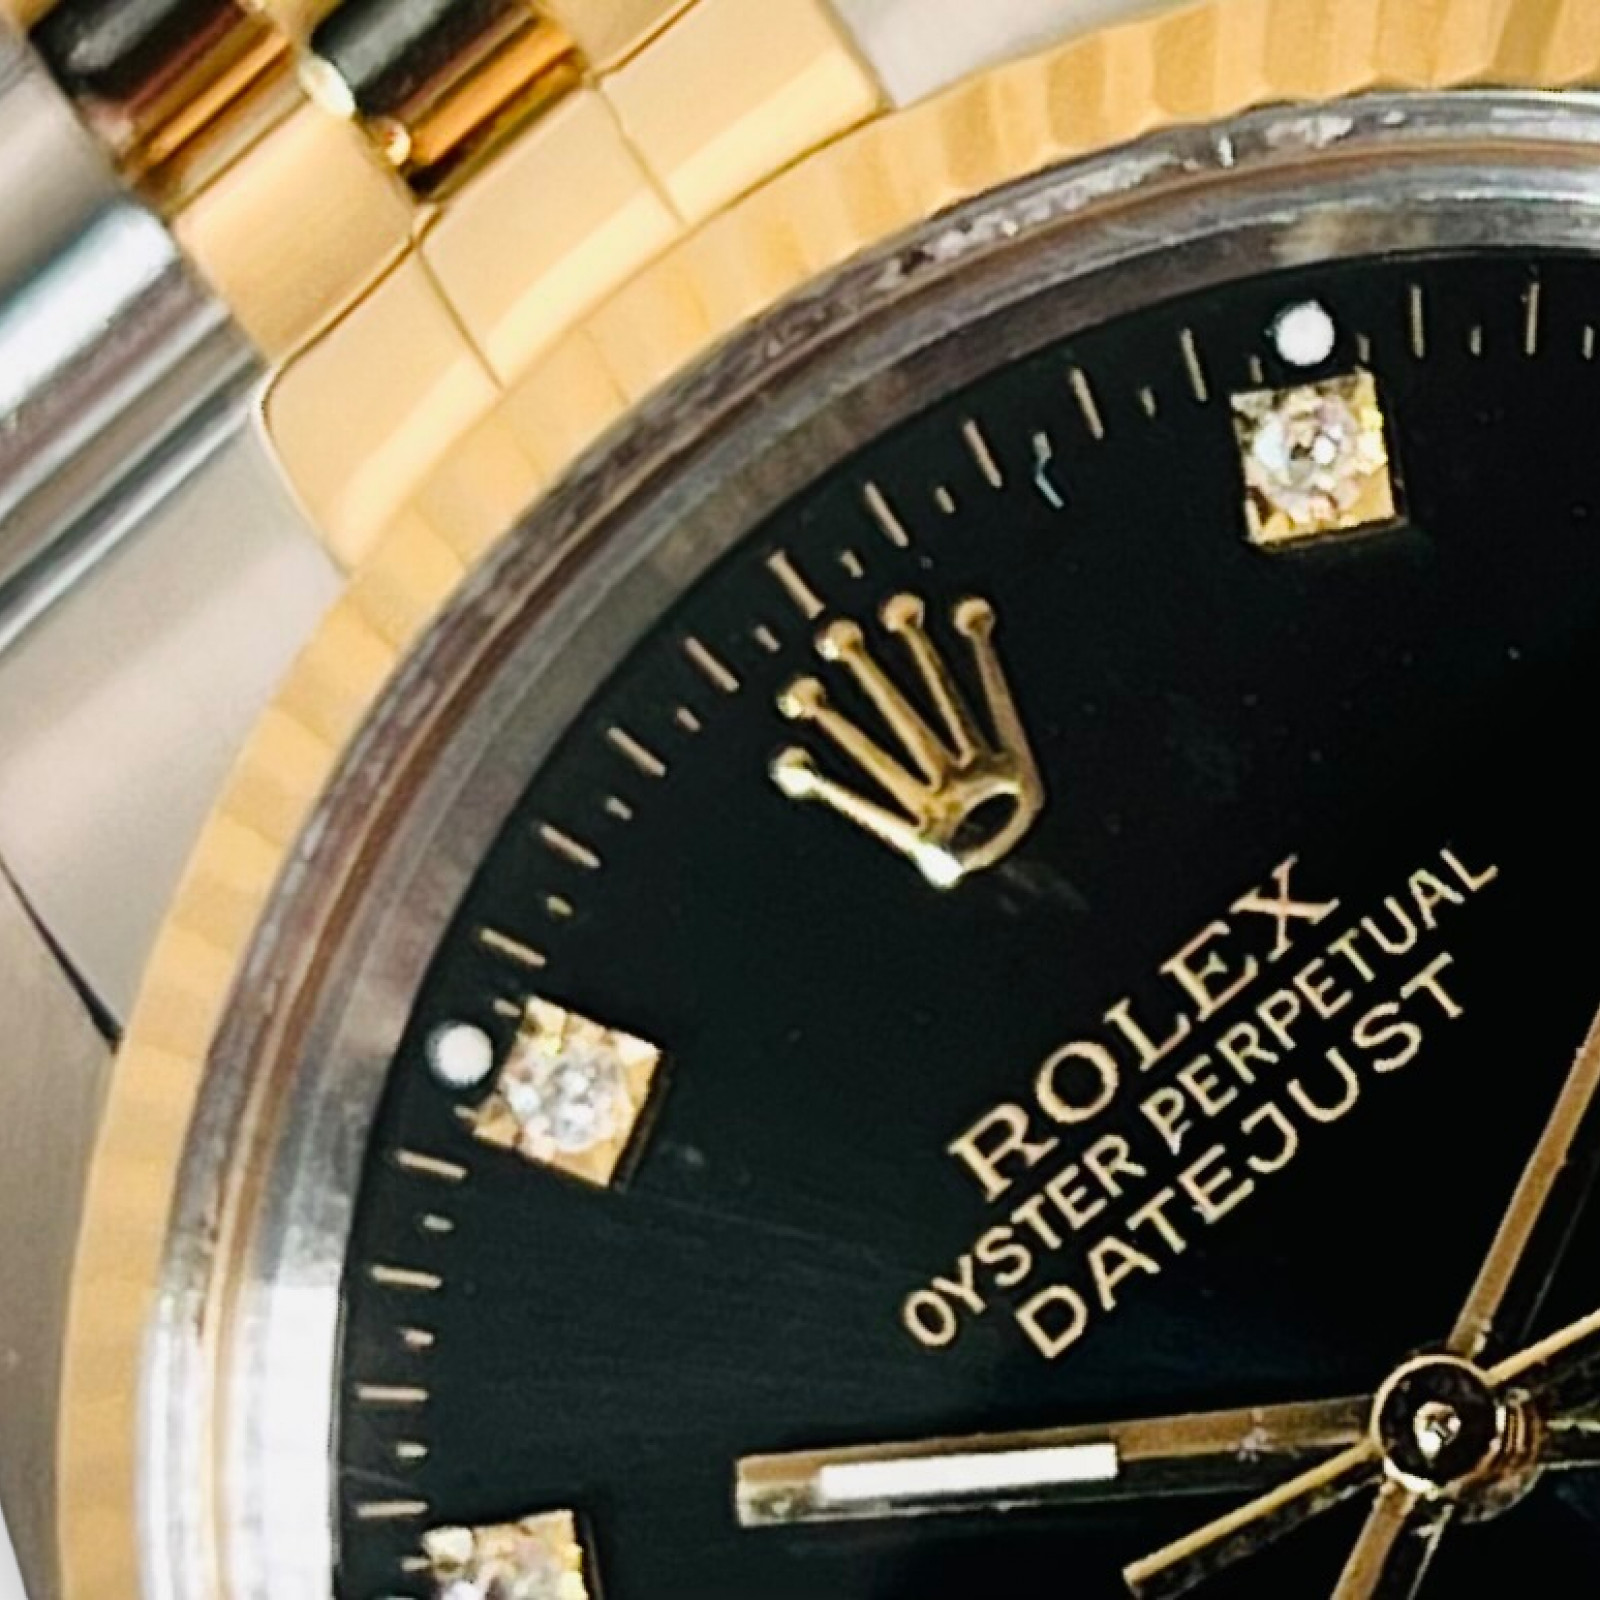 Rolex Datejust 16013 Gold & Steel